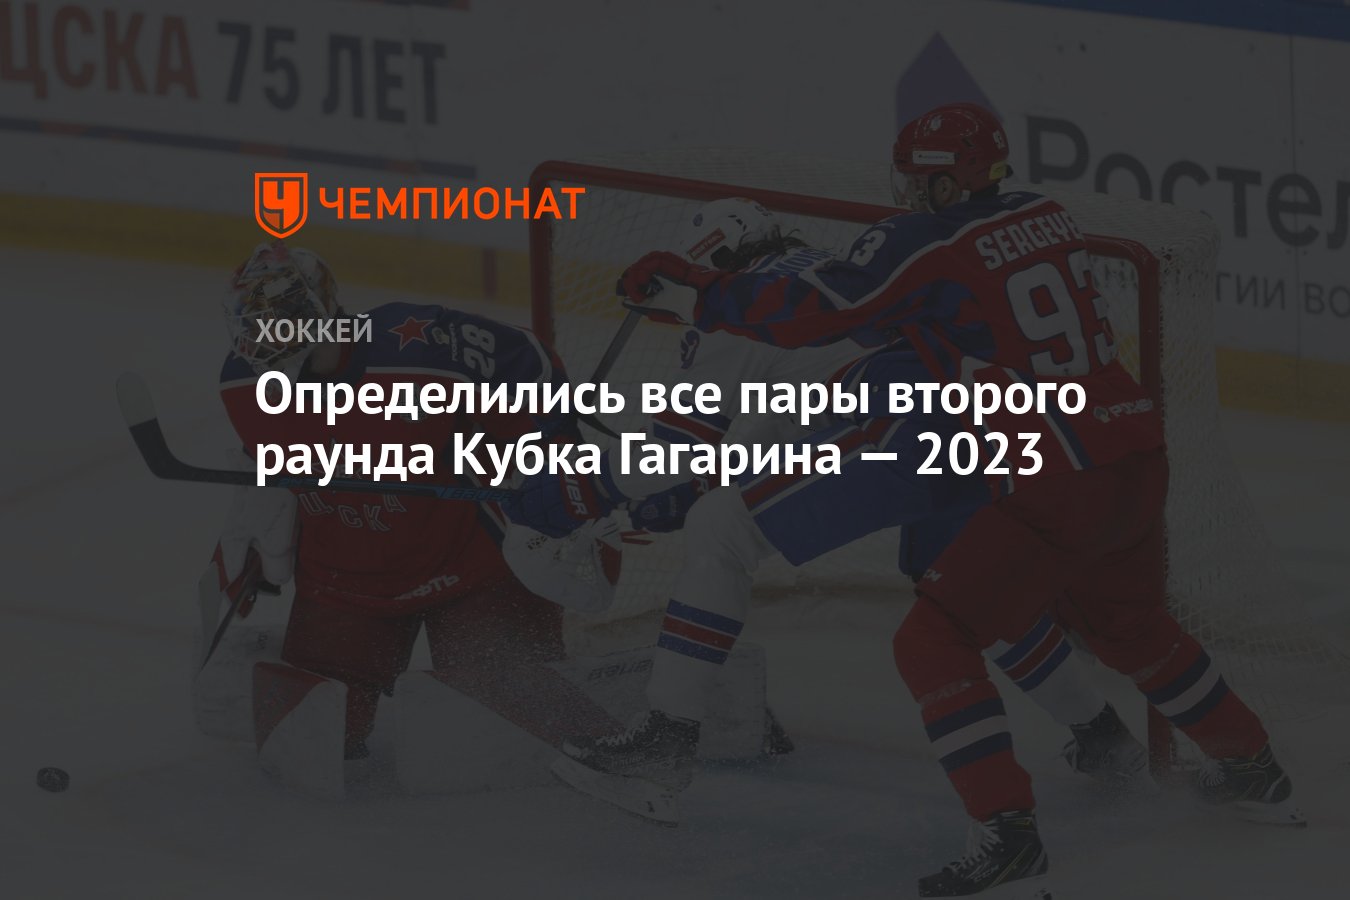 Финал гагарина 2023 расписание. Кубок Гагарина 2023.